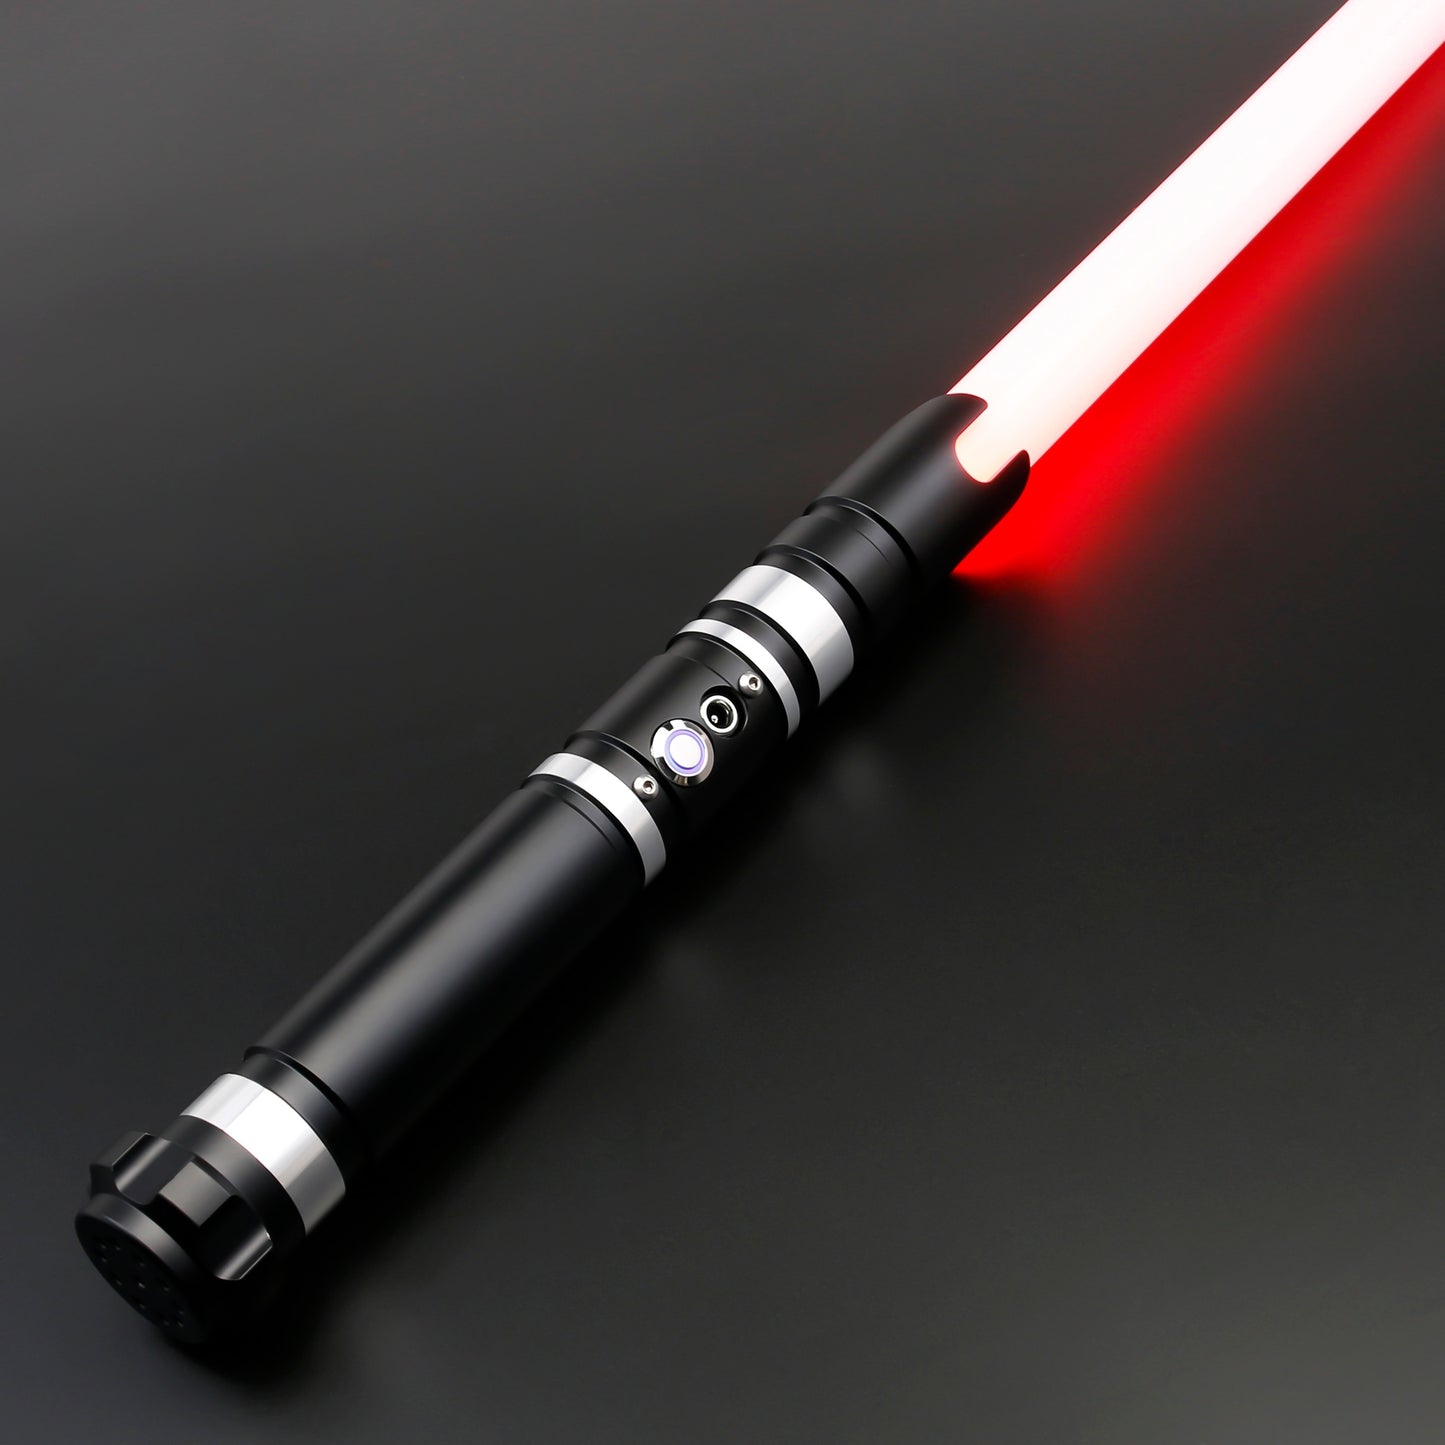 Star Wars Color Changing Lightsaber with Sound Lightsaber | Durable, Aluminum Hilt, Rounded Shaped Emitter, RGB Star Wars laser sword